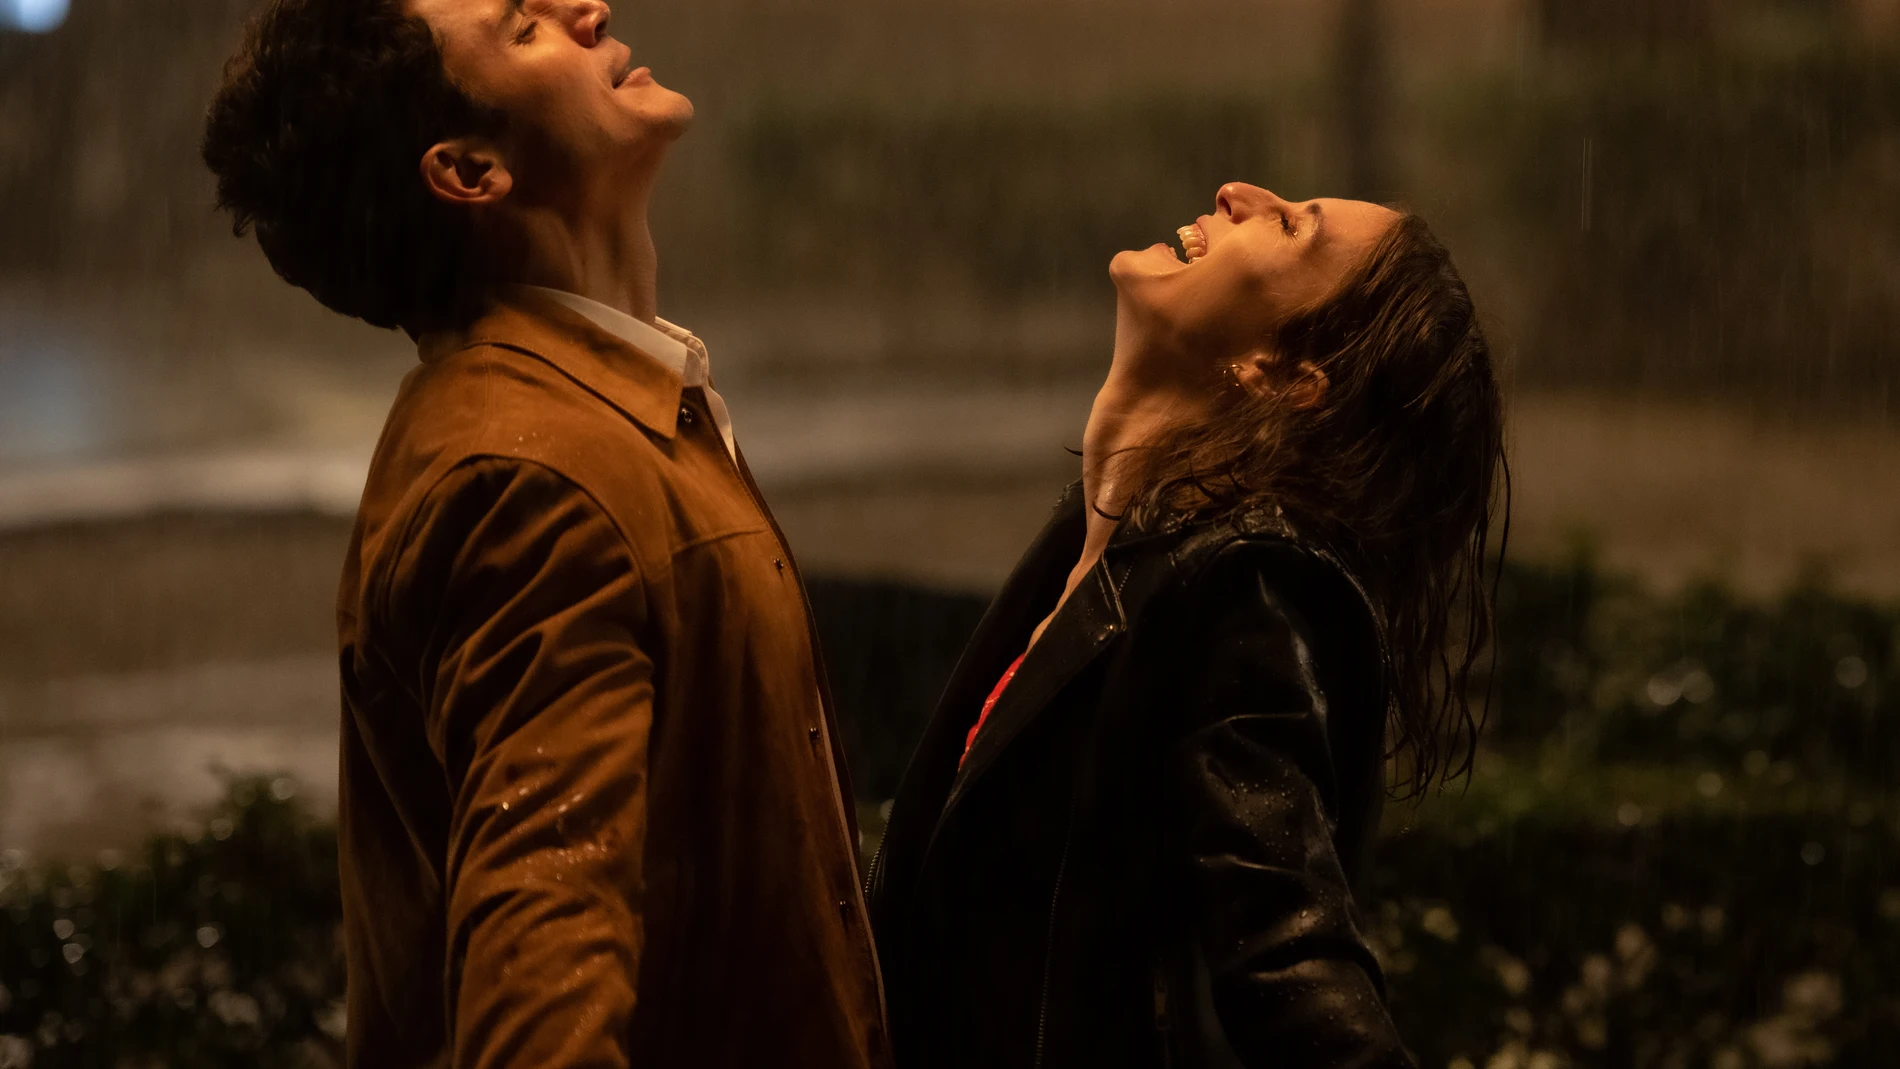 María Valverde y Álex González protagonizan "Fuimos canciones", película basada en la trilogía original literaria de Elísabet Benavent